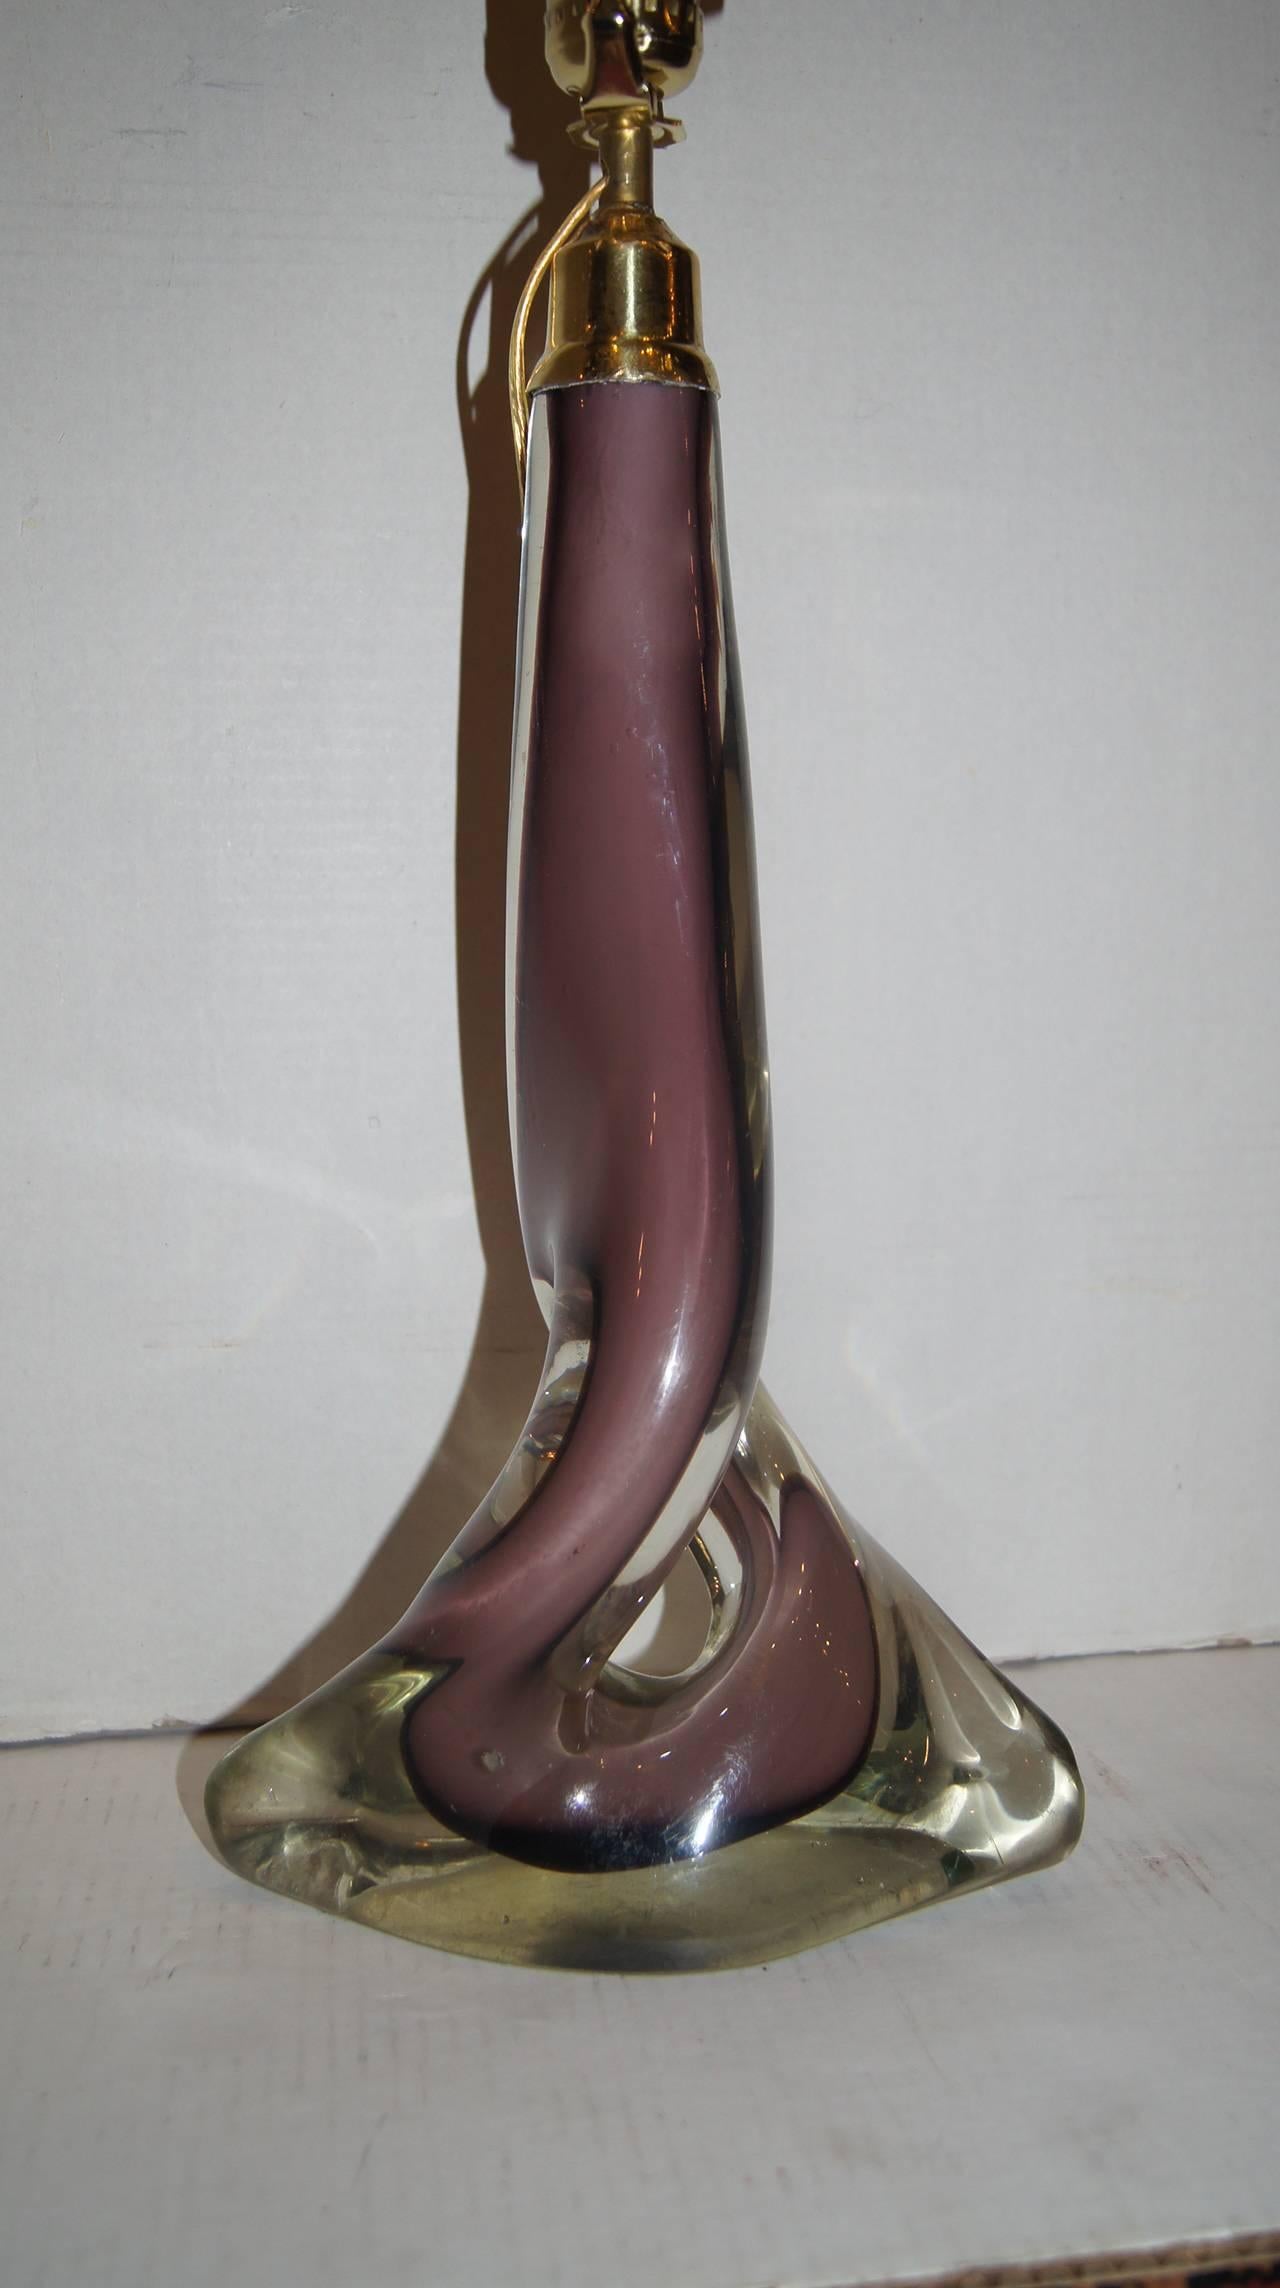 Une lampe unique de Murano du milieu du siècle, en verre améthyste et transparent. Très beau corps de forme sculpturale. Etat impeccable, recâblé.

Mesures :
Hauteur du corps seulement : 16